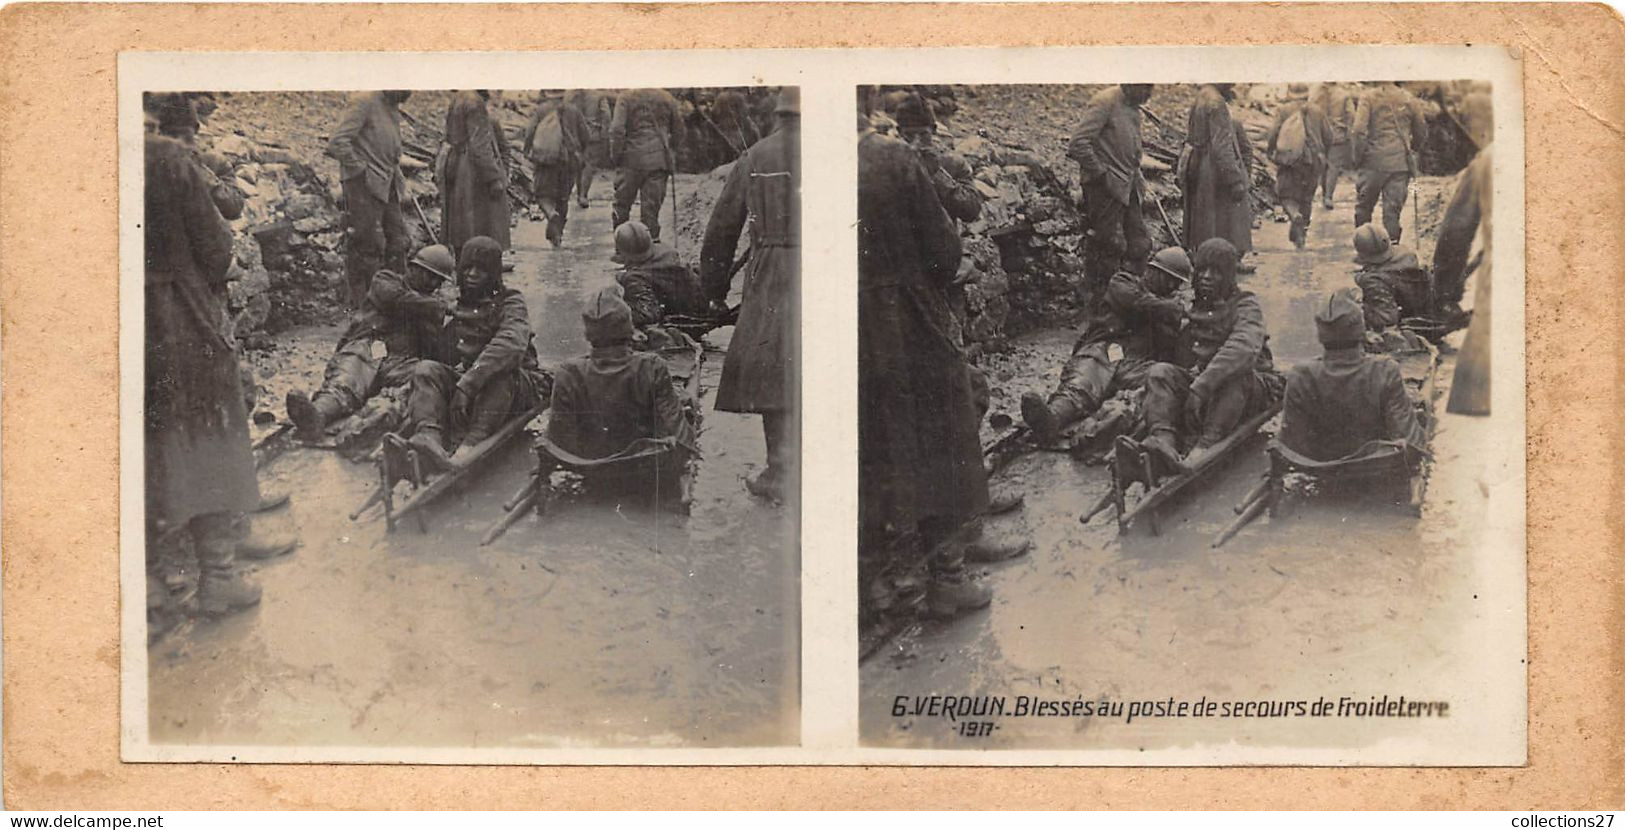 55-VERDUN- 1917 BLESSES AU POSTE DE SECOURS DE FROIDETERRE - Fotos Estereoscópicas